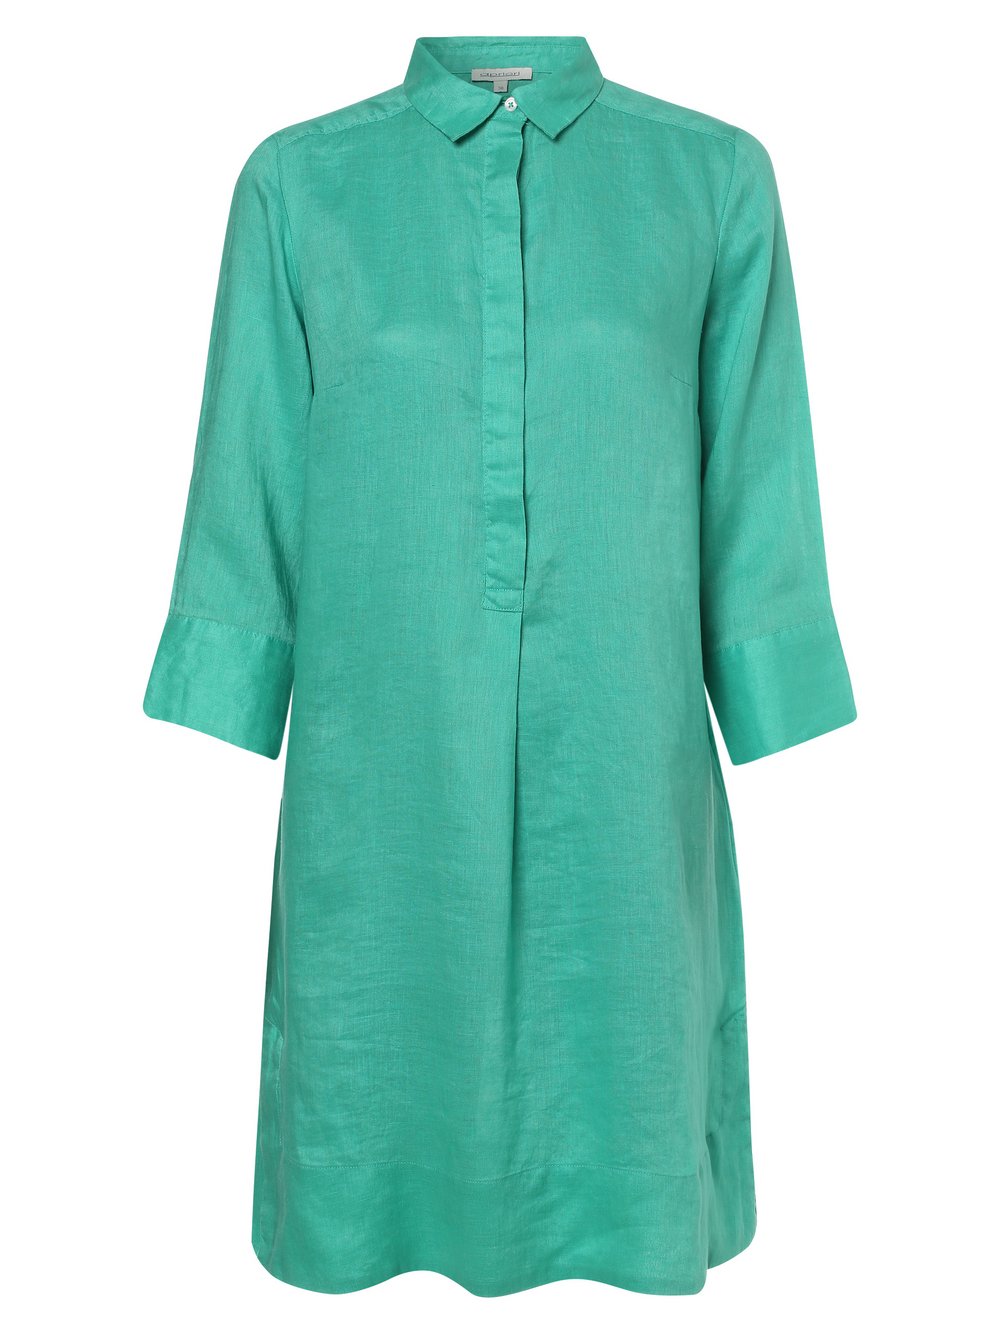 Apriori - Damska sukienka lniana, zielony|niebieski